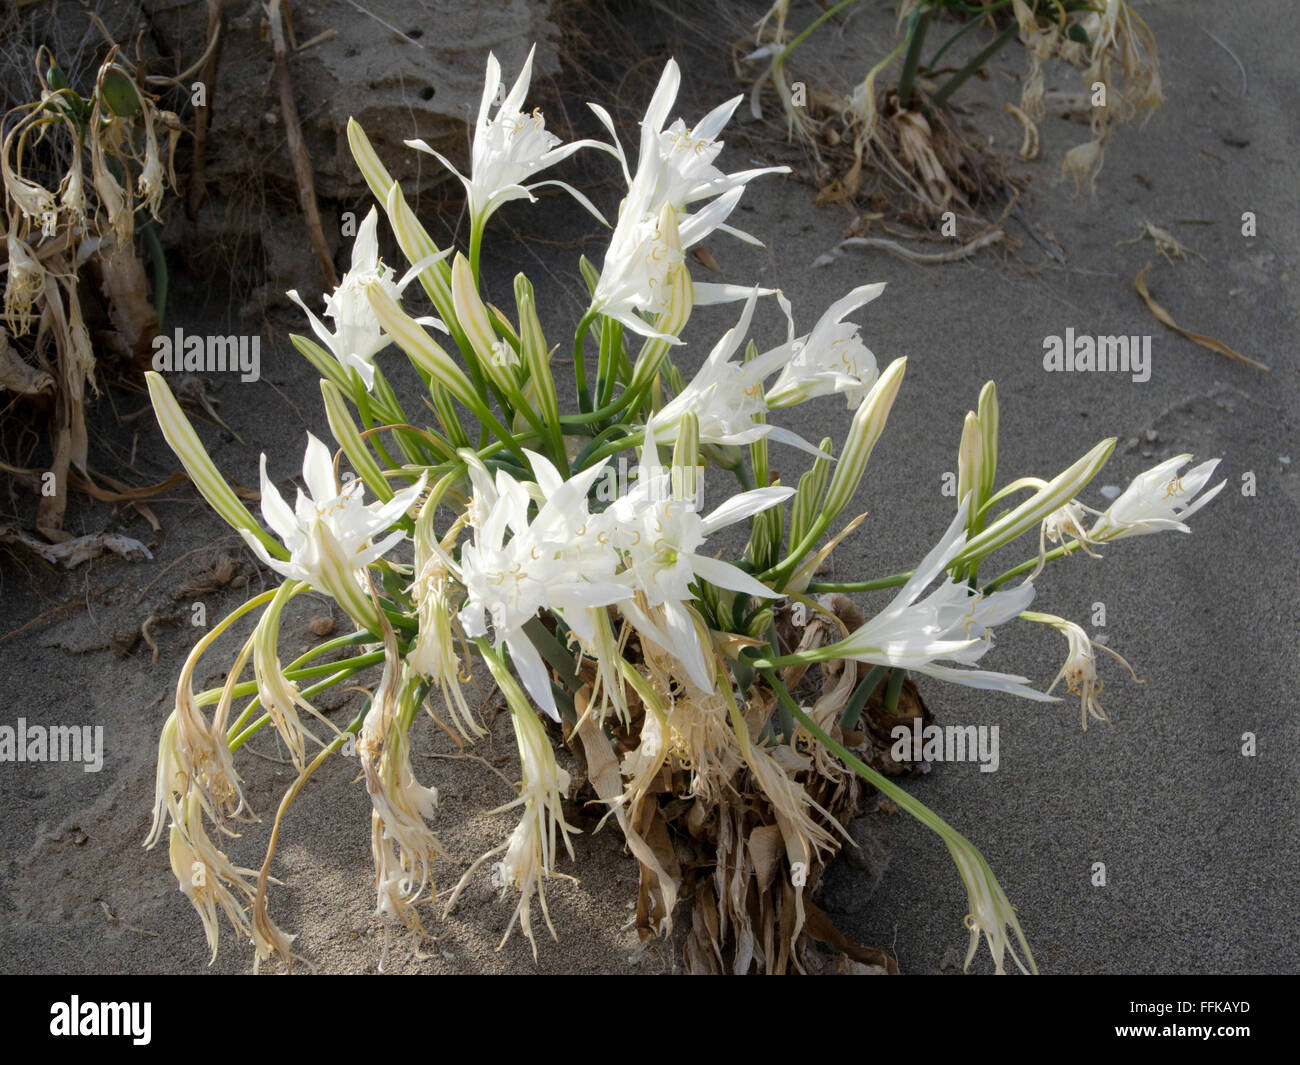 Griechenland, Kreta, Xerokambos, Strandlilie oder Dünen-Trichternarzisse (Pancratium maritimum) Stock Photo